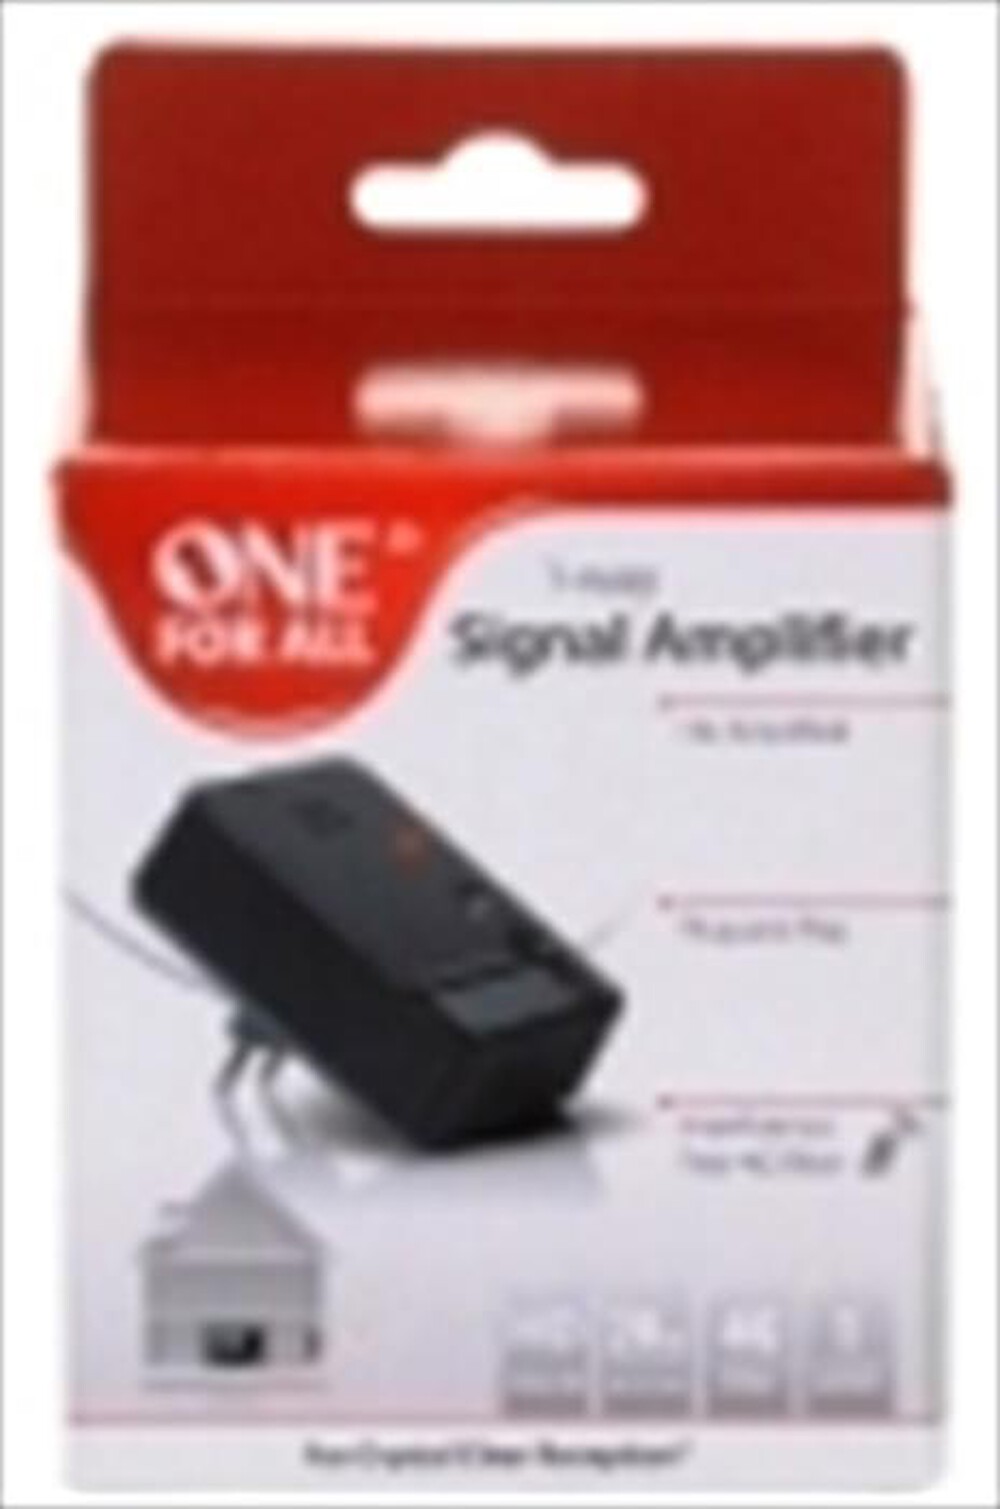 "ONE FOR ALL - Amplificatore di segnale digitale SV 9610 NEW-NERO"